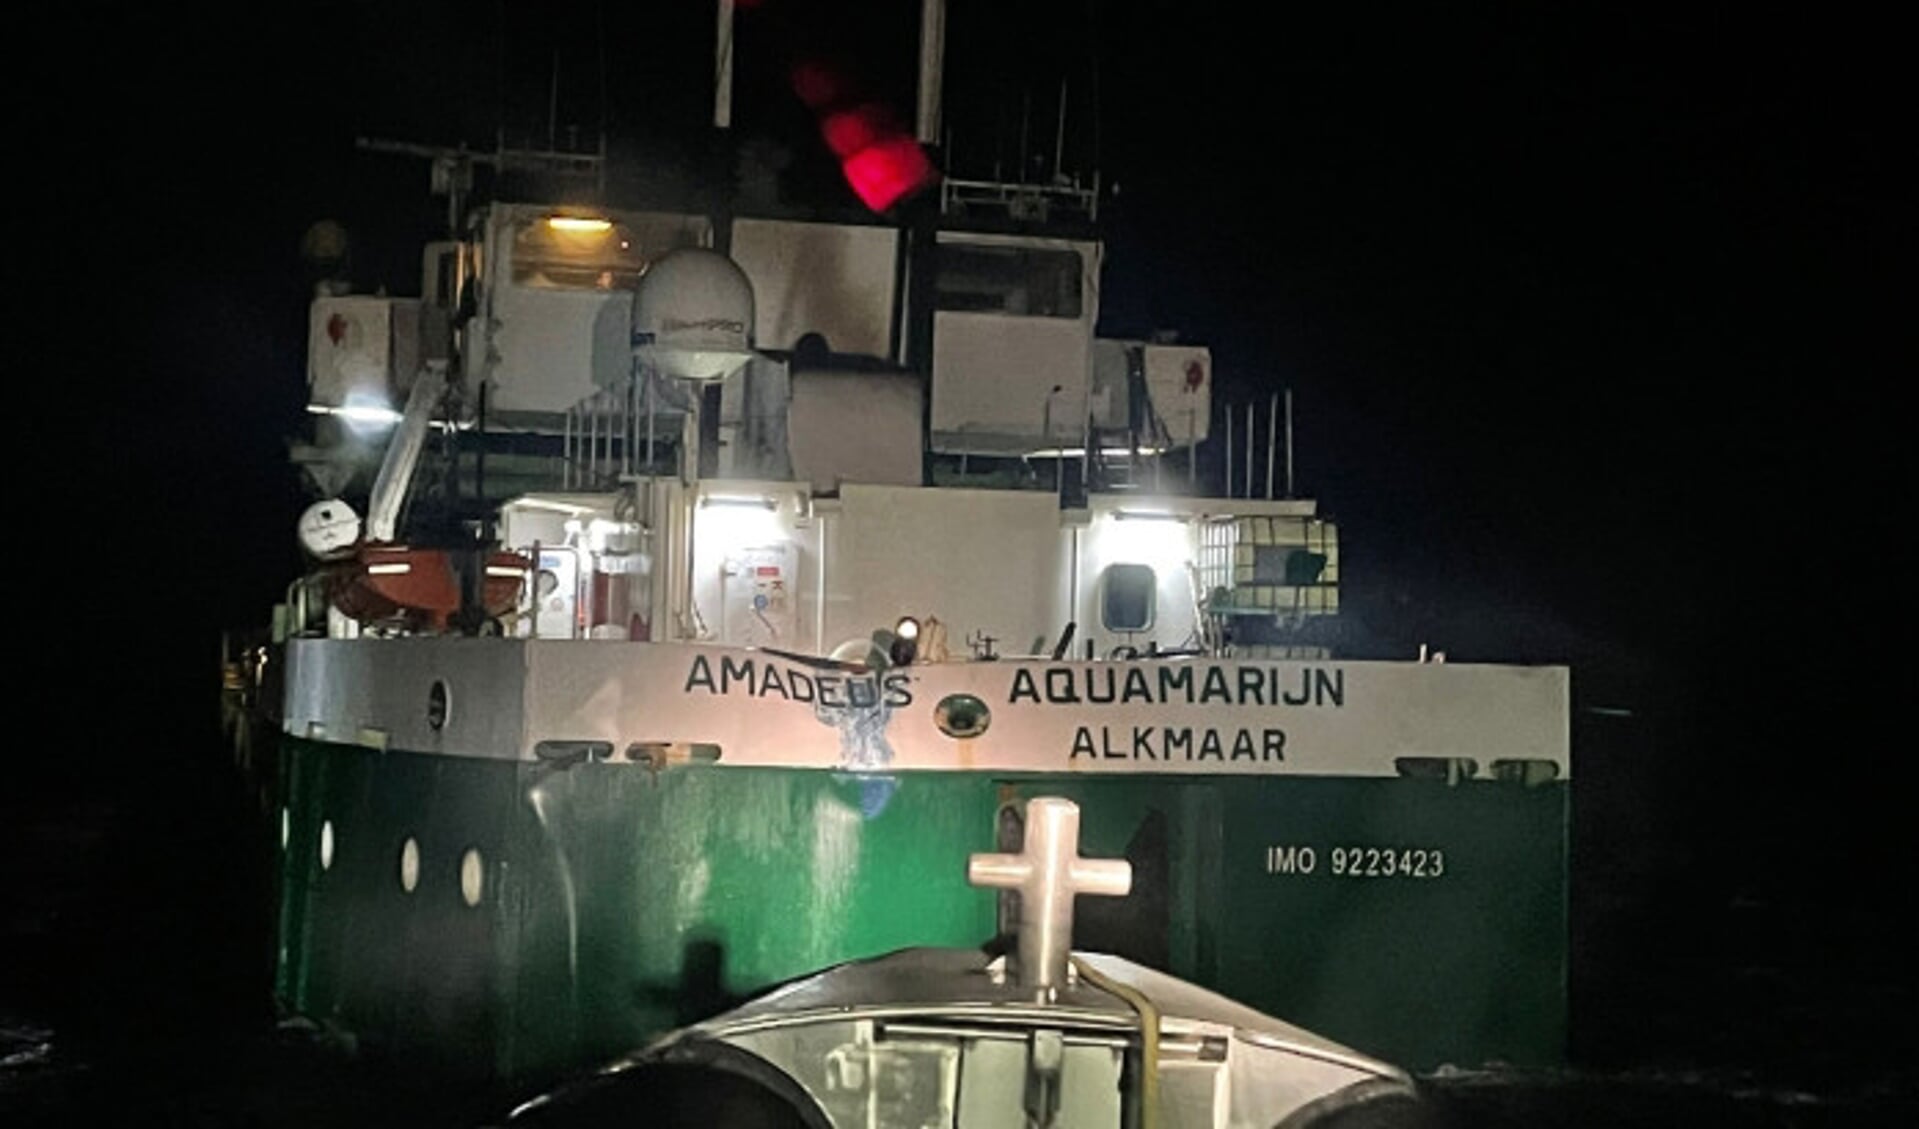 De beschadigde Aquamarijn uit Alkmaar.